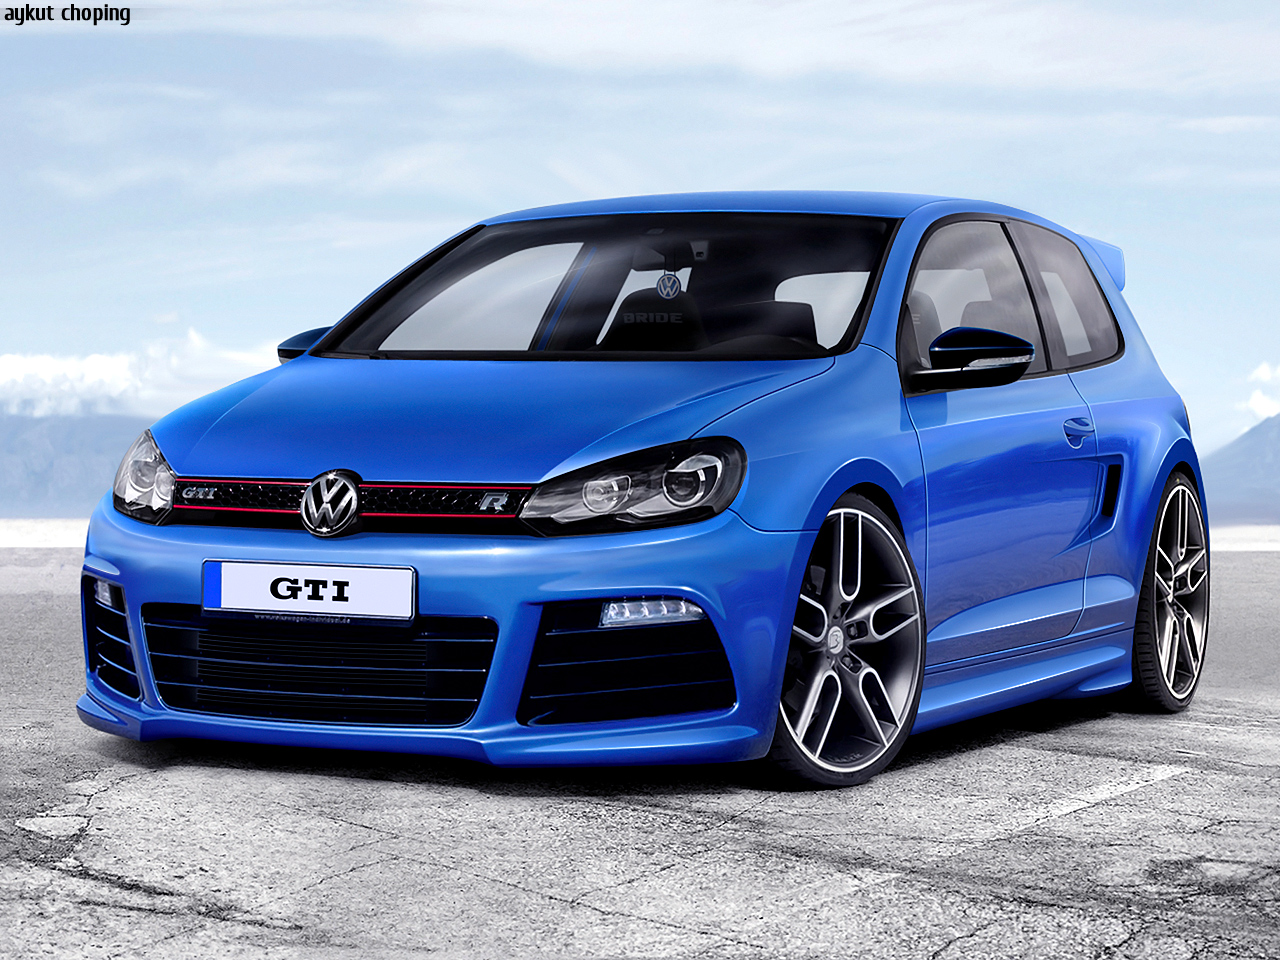 Volkswagen Golf GTI HD wallpapers, Desktop wallpaper - most viewed